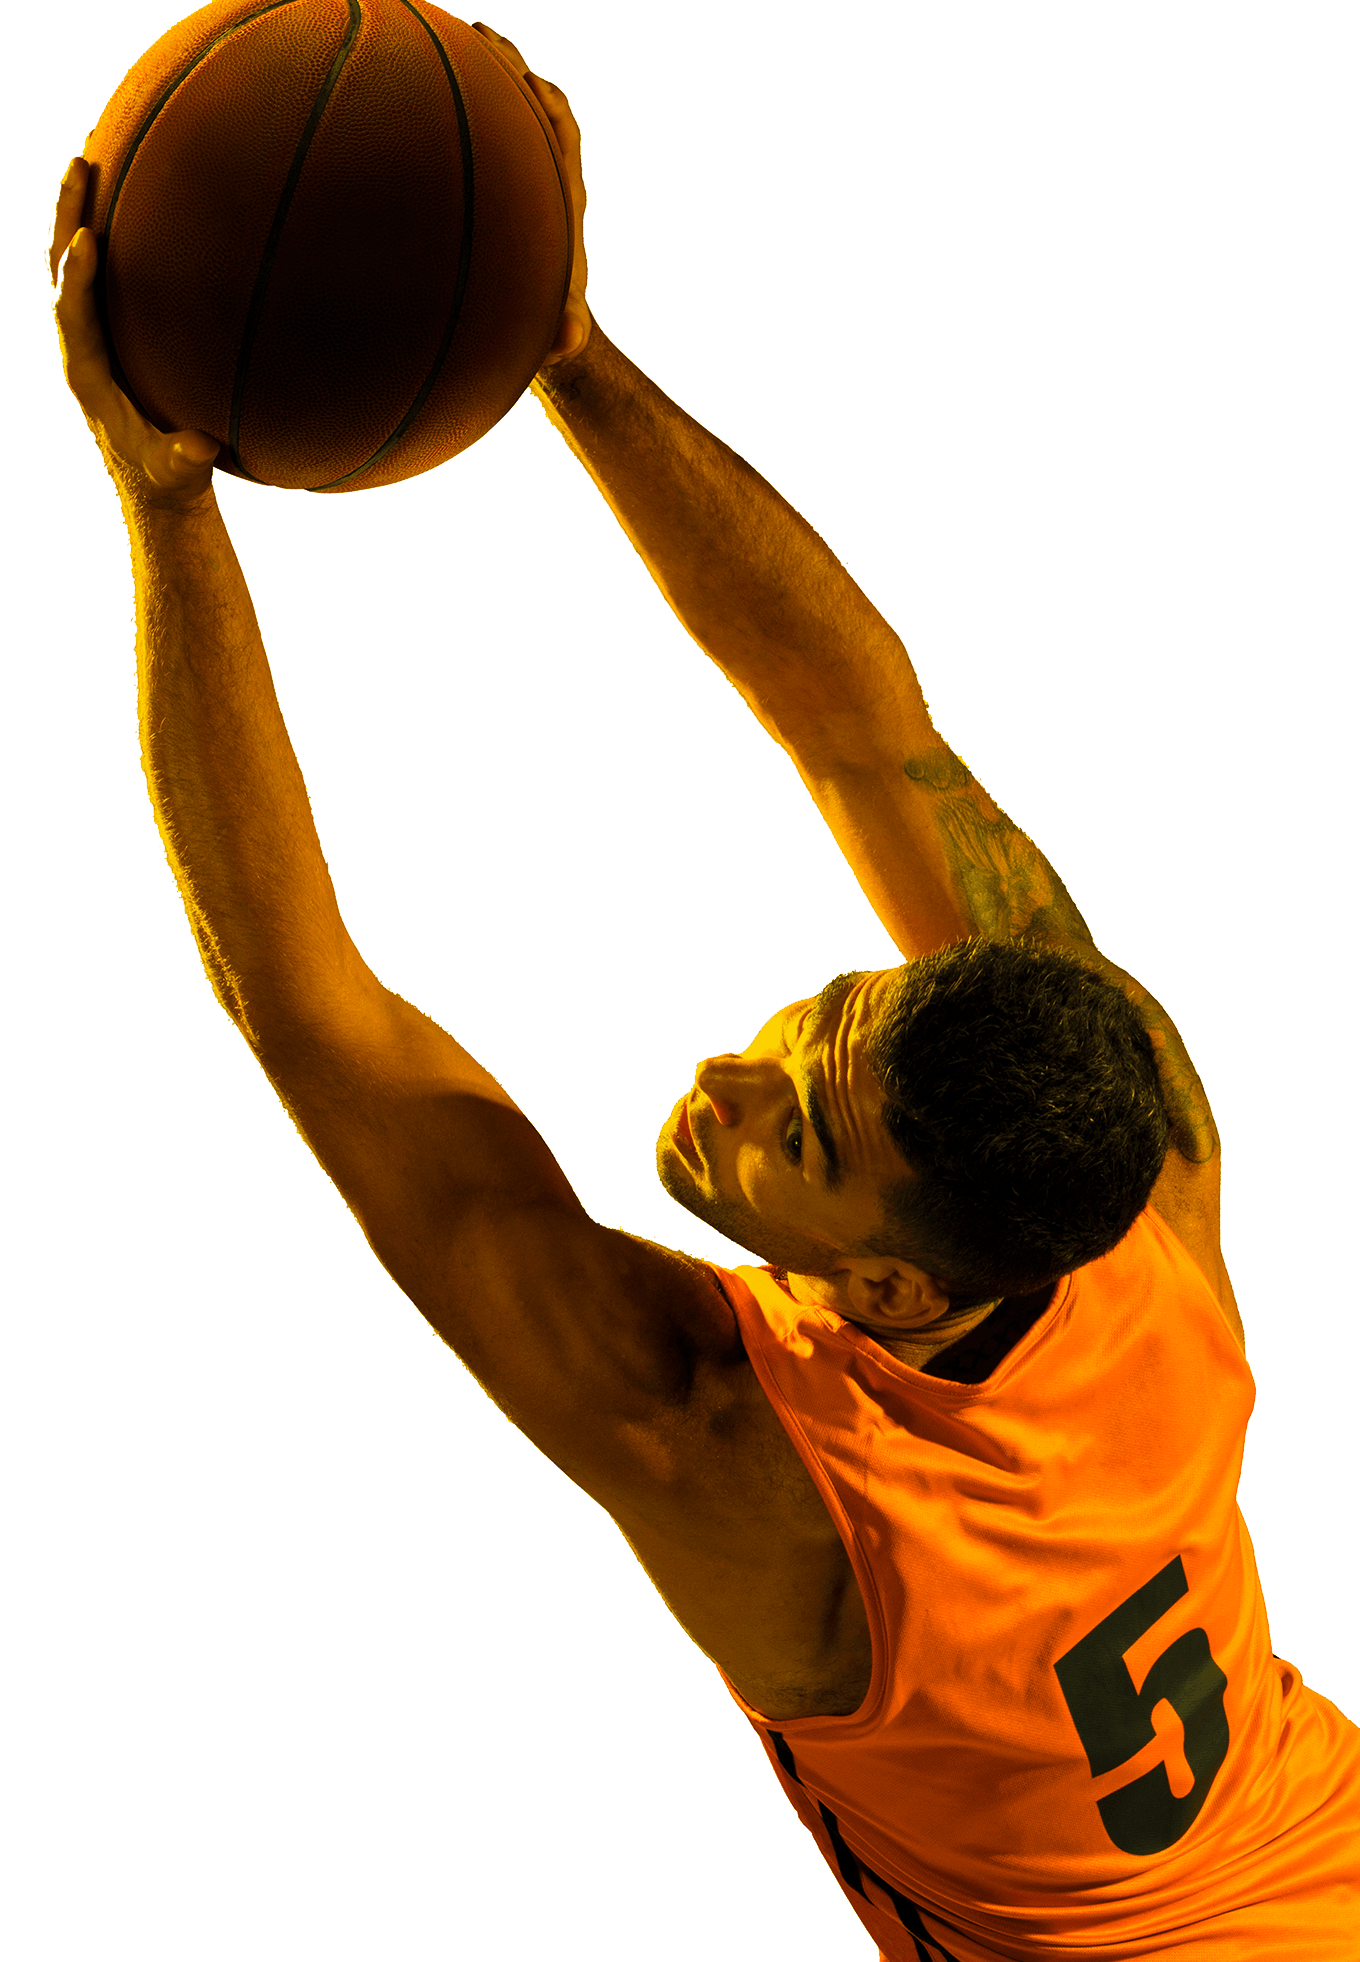 En la foto, un basquetbolista extiende sus brazos sosteniendo el balón. Viste una polera de color naranjo, con el número 5 inscrito en su espalda. 